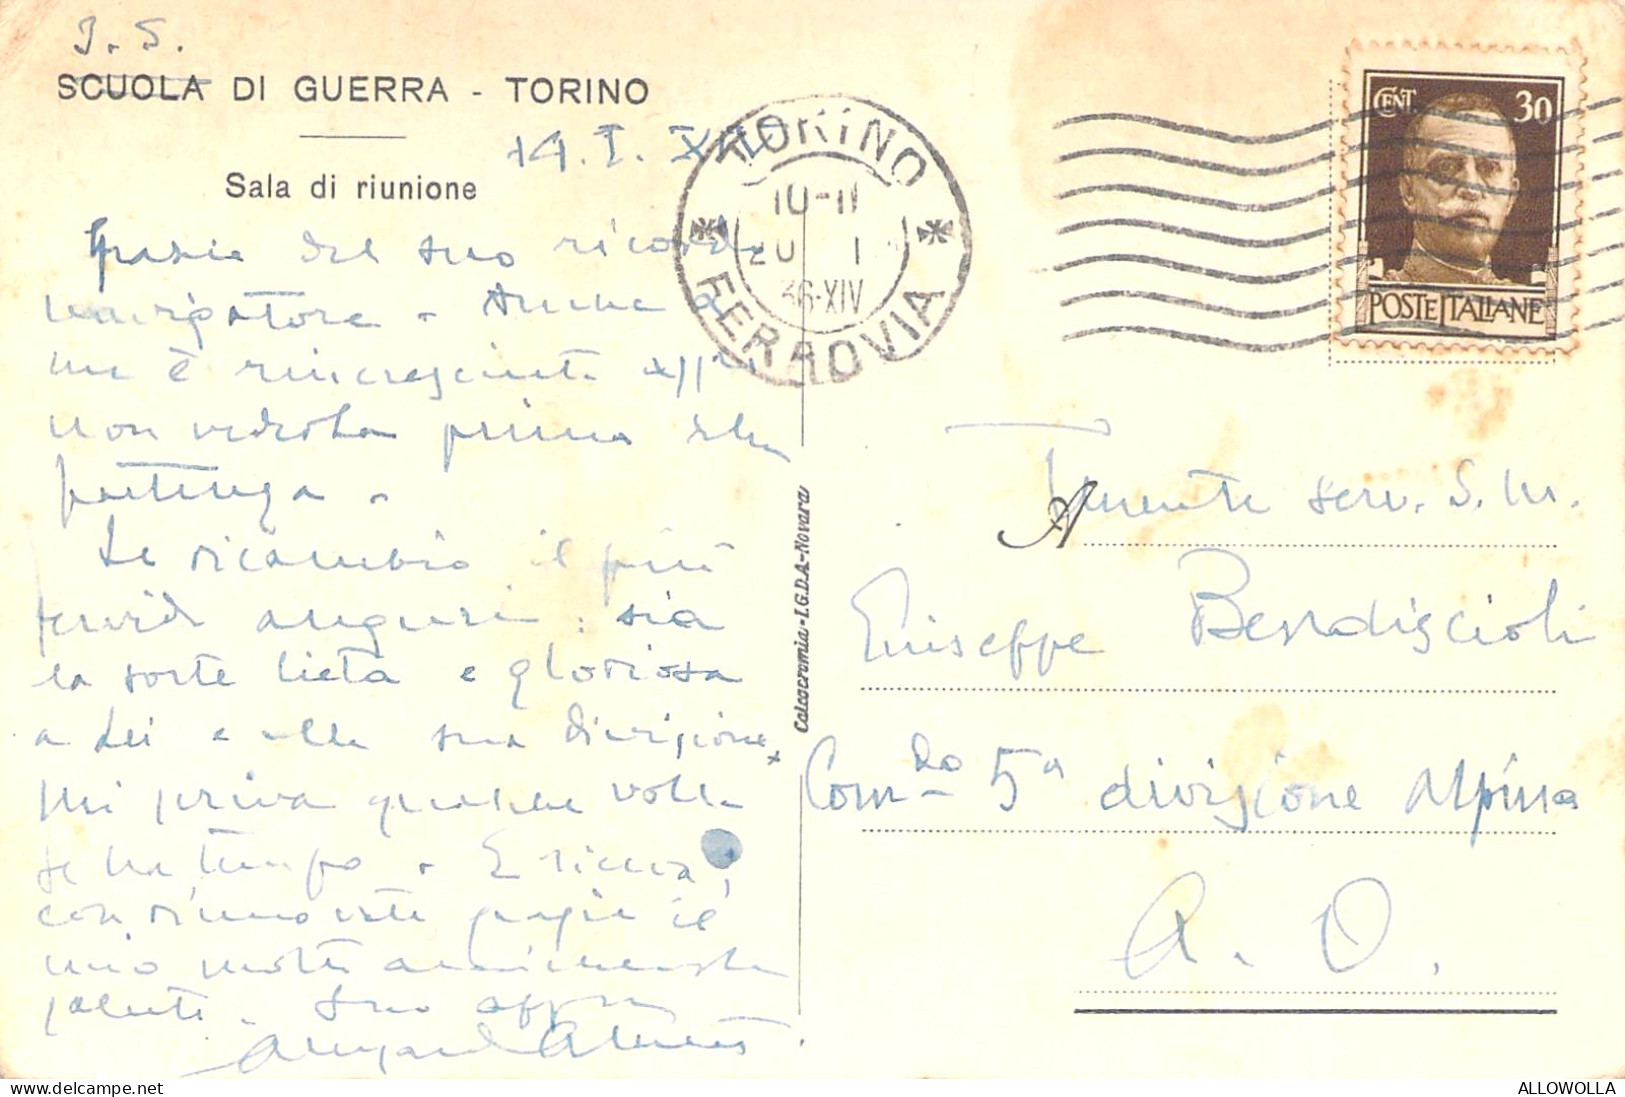 21334 " TORINO-SCUOLA DI GUERRA-SALA DI RIUNIONE " -VERA FOTO -CART. POST. SPED.1936 - Educazione, Scuole E Università